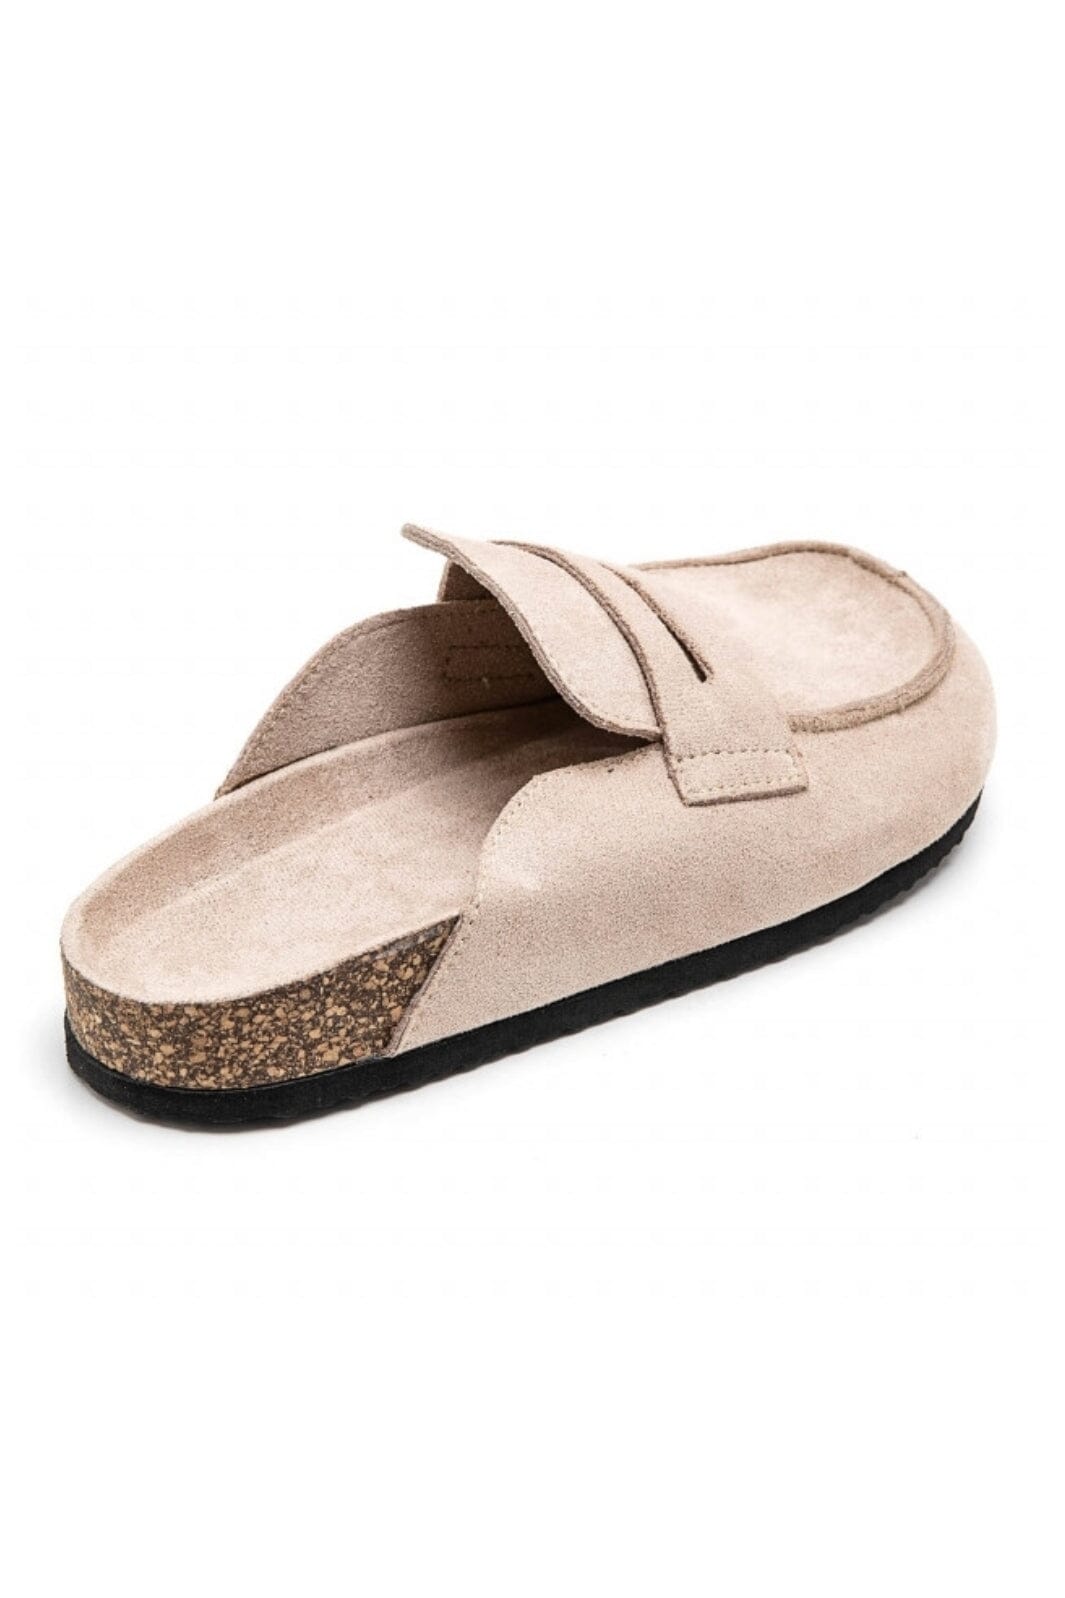 Marta Du Chateau - Ladies Shoes 7218 - Beige Loafers 